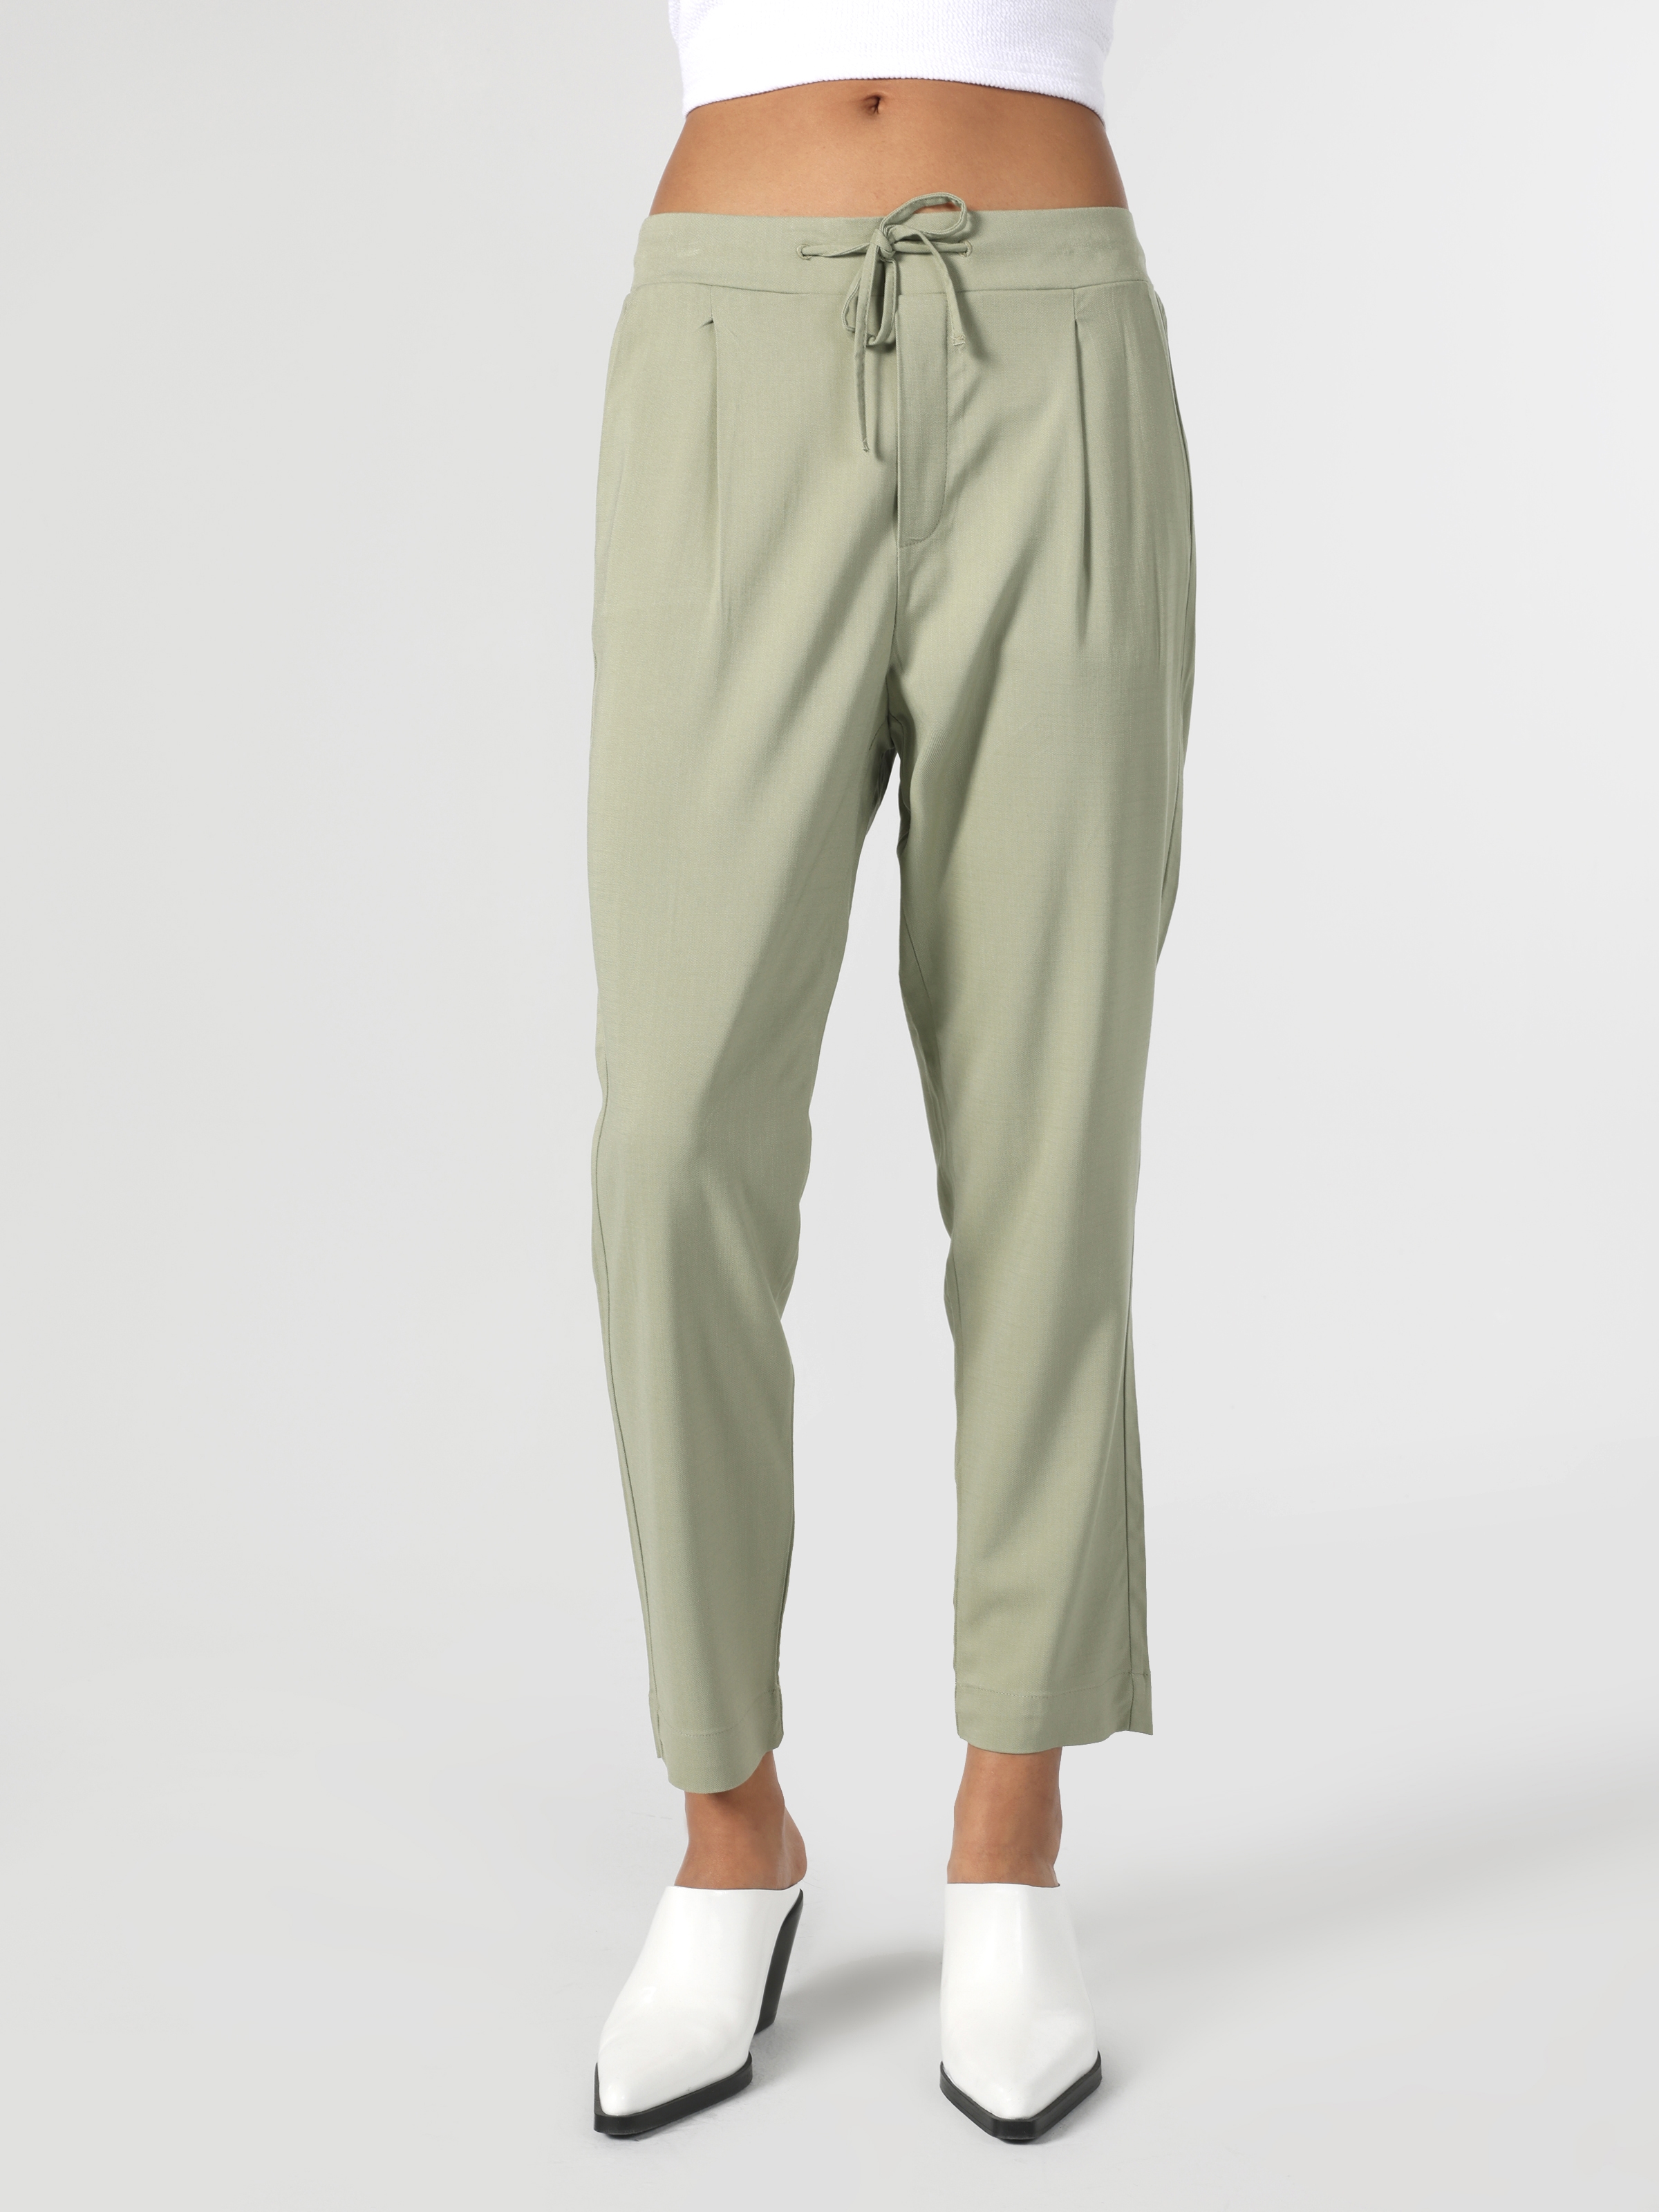 Afficher les détails de Pantalon Femme Coupe Droite Taille Basse Coupe Droite Vert